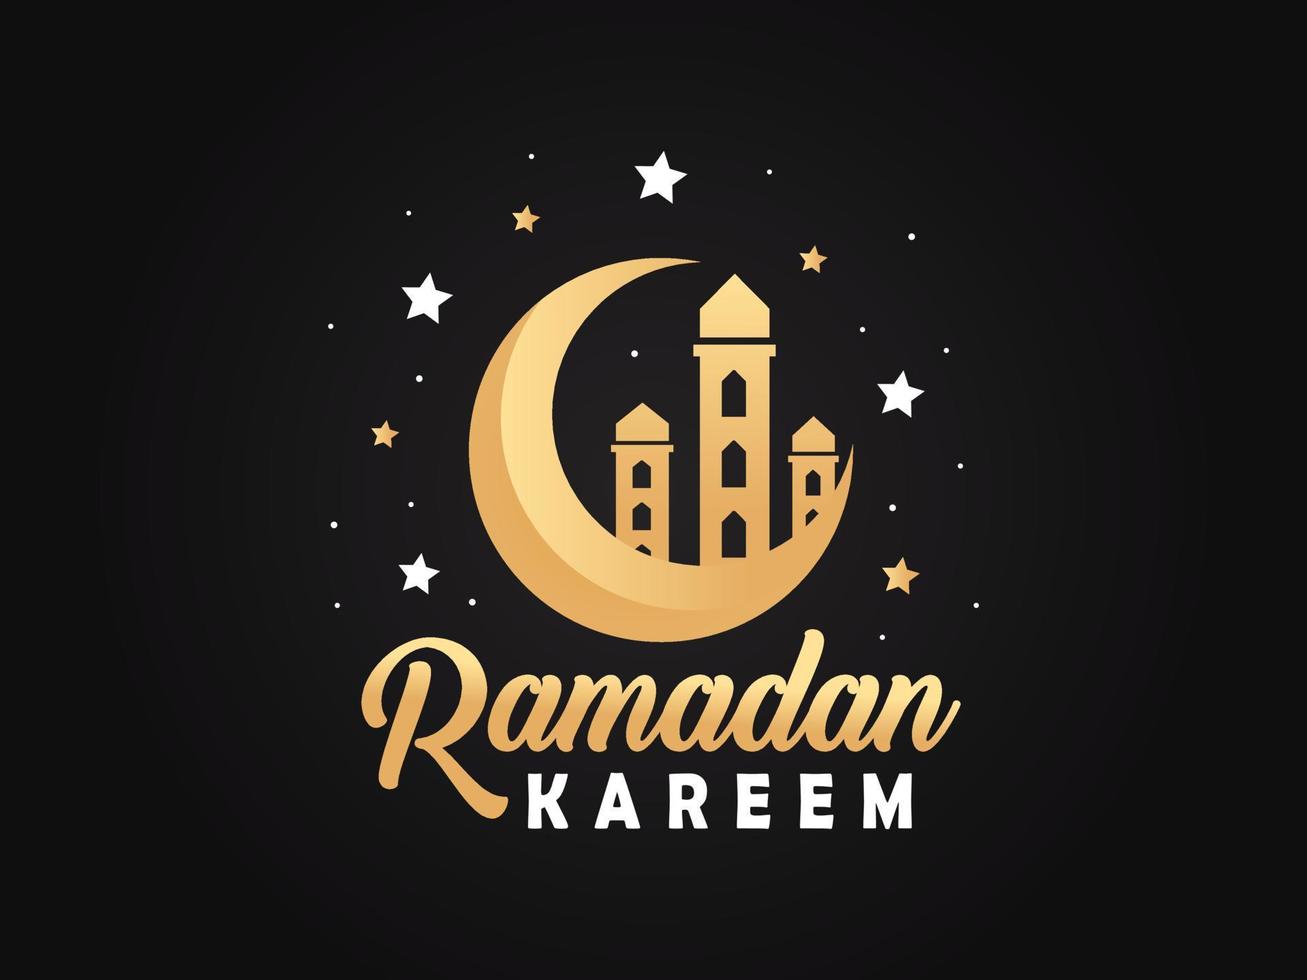 Ramadan kareem salutation conception vecteur avec islamique lanterne et arabe calligraphie pour musulman communauté vecteur illustration.